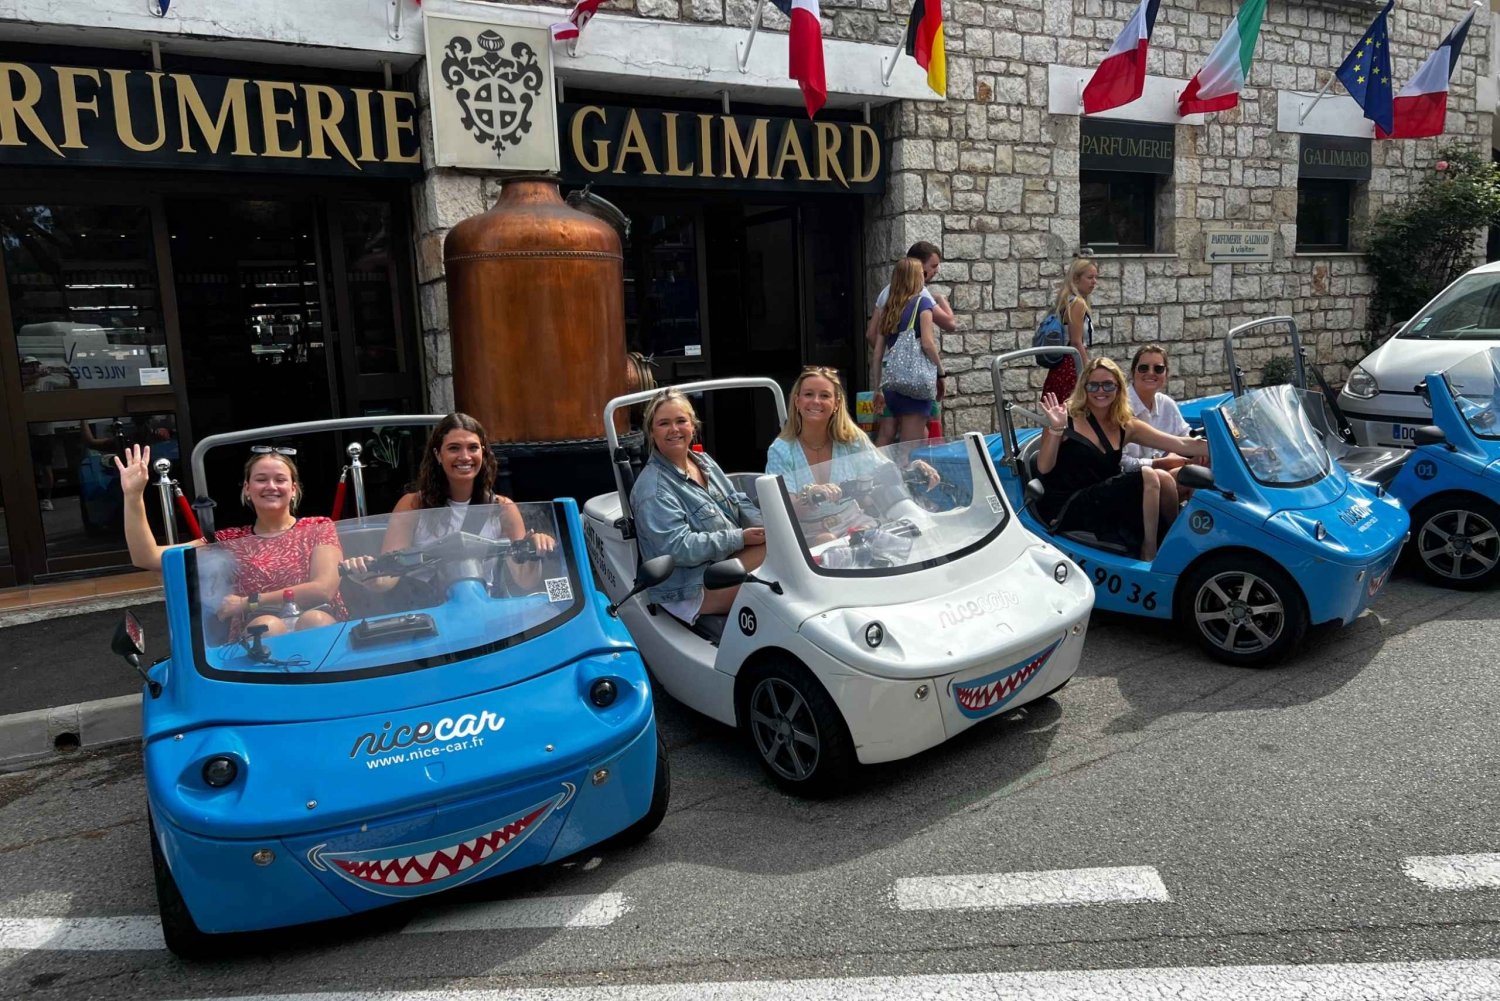 Desde Niza: Tour privado de la Costa Azul en coche descapotable